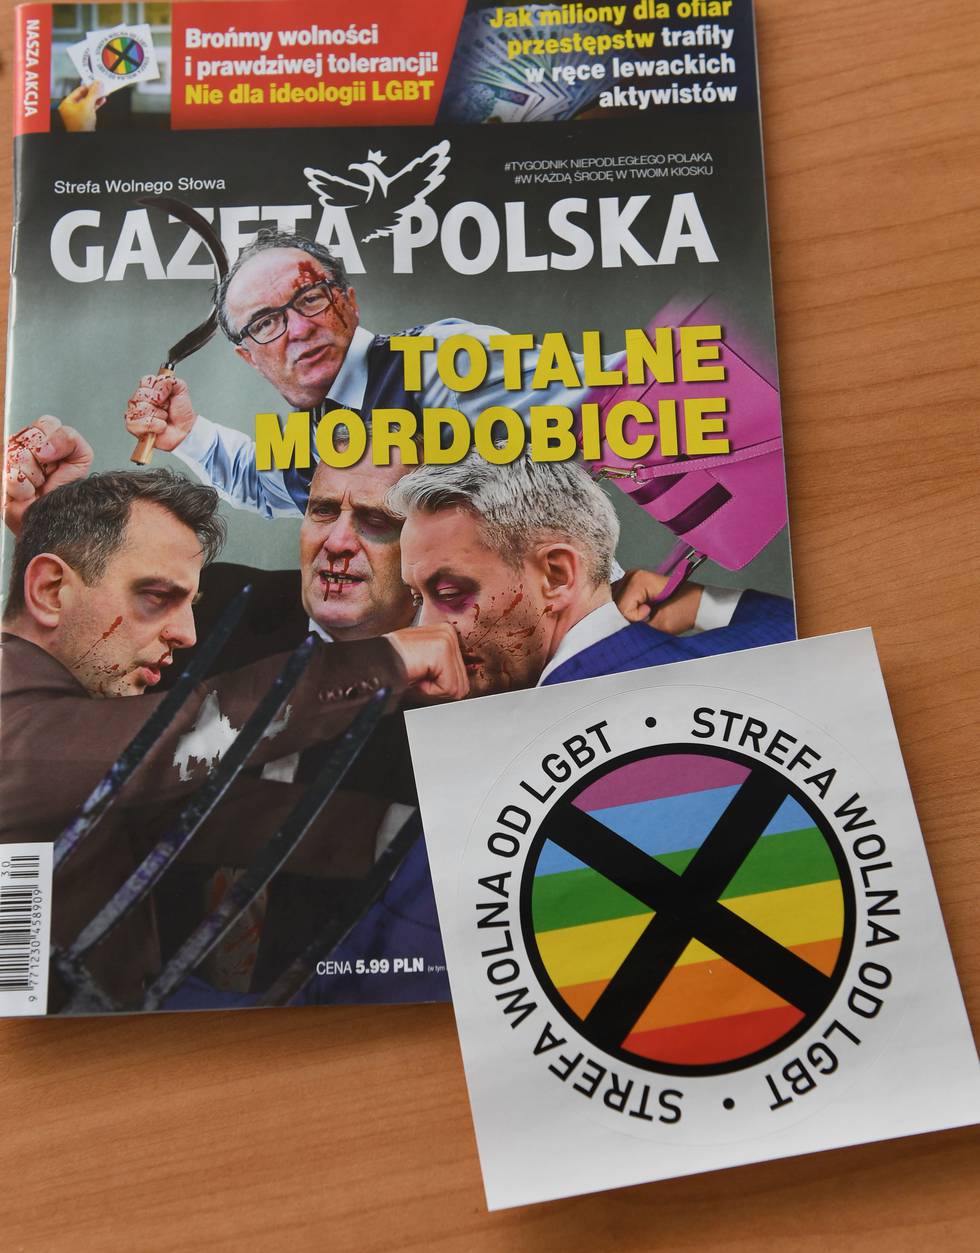 POLAND-LGBT-POLITICS-GAY-RIGHTS-MEDIA